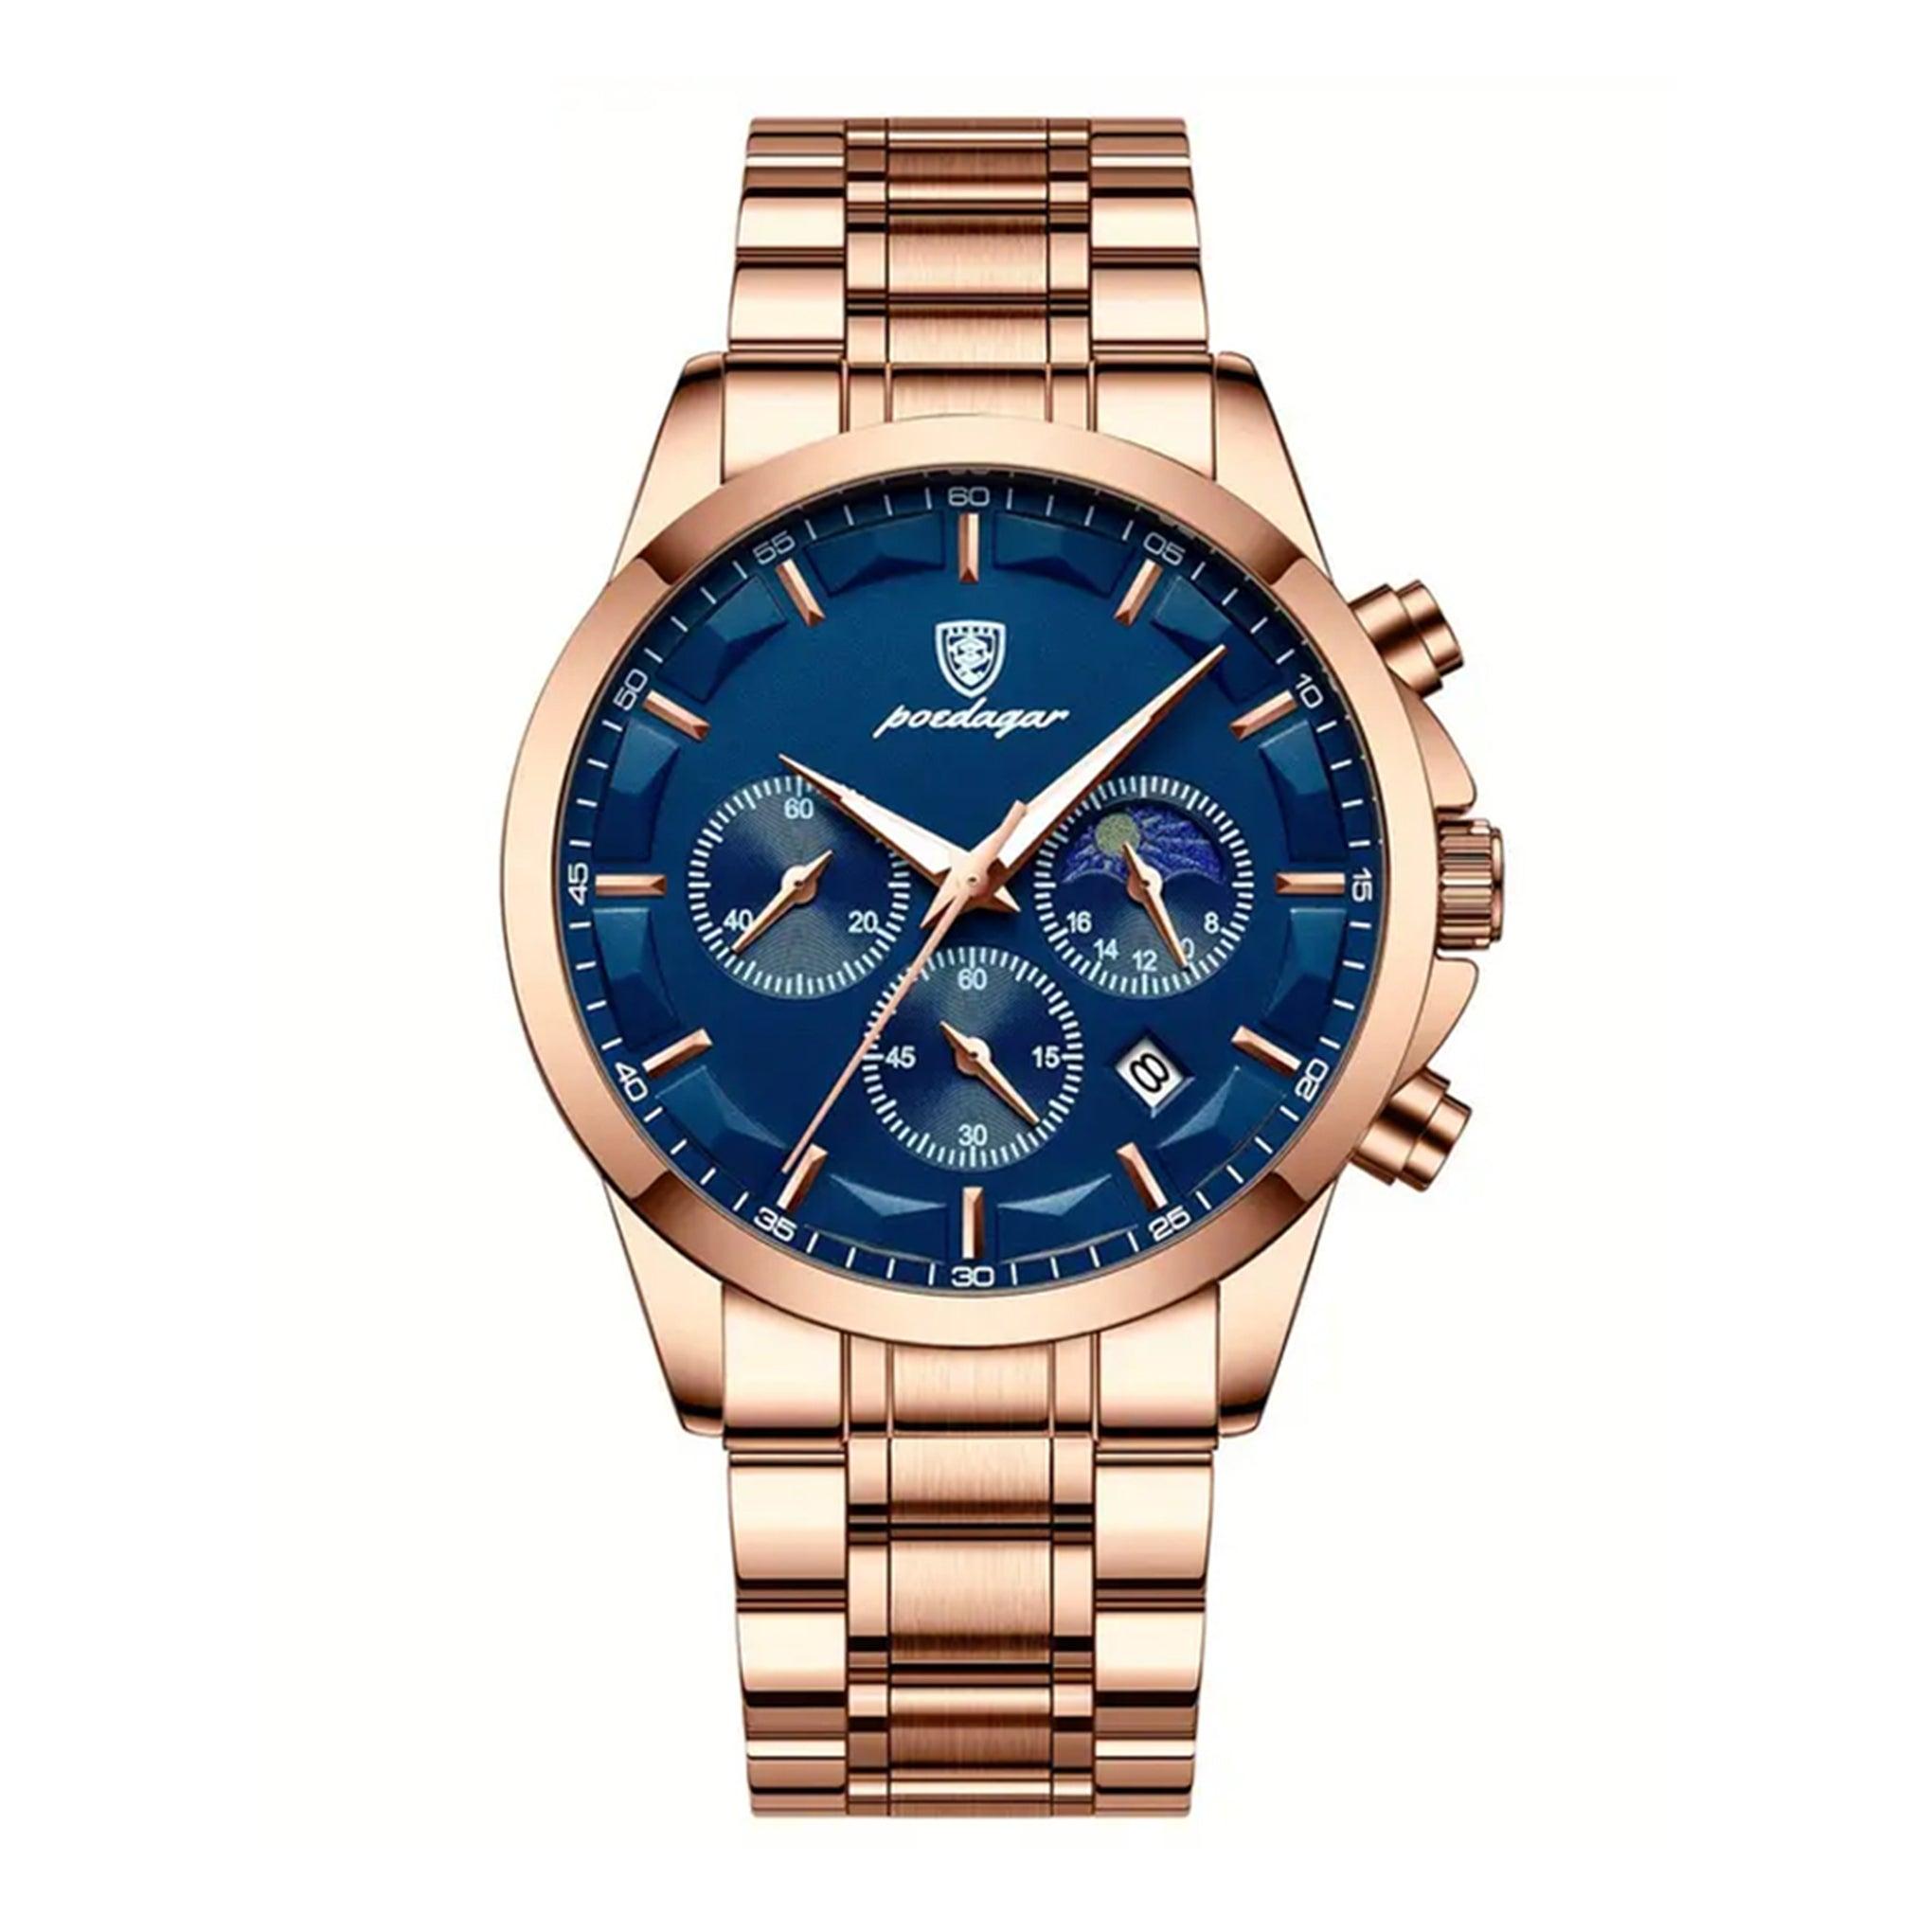 ساعة رجاليه ستانلس ستيل بويدغار Poedagar Men's Quartz Rose Gold Stainless Steel Band Blue Dial Watch - 928rgbus